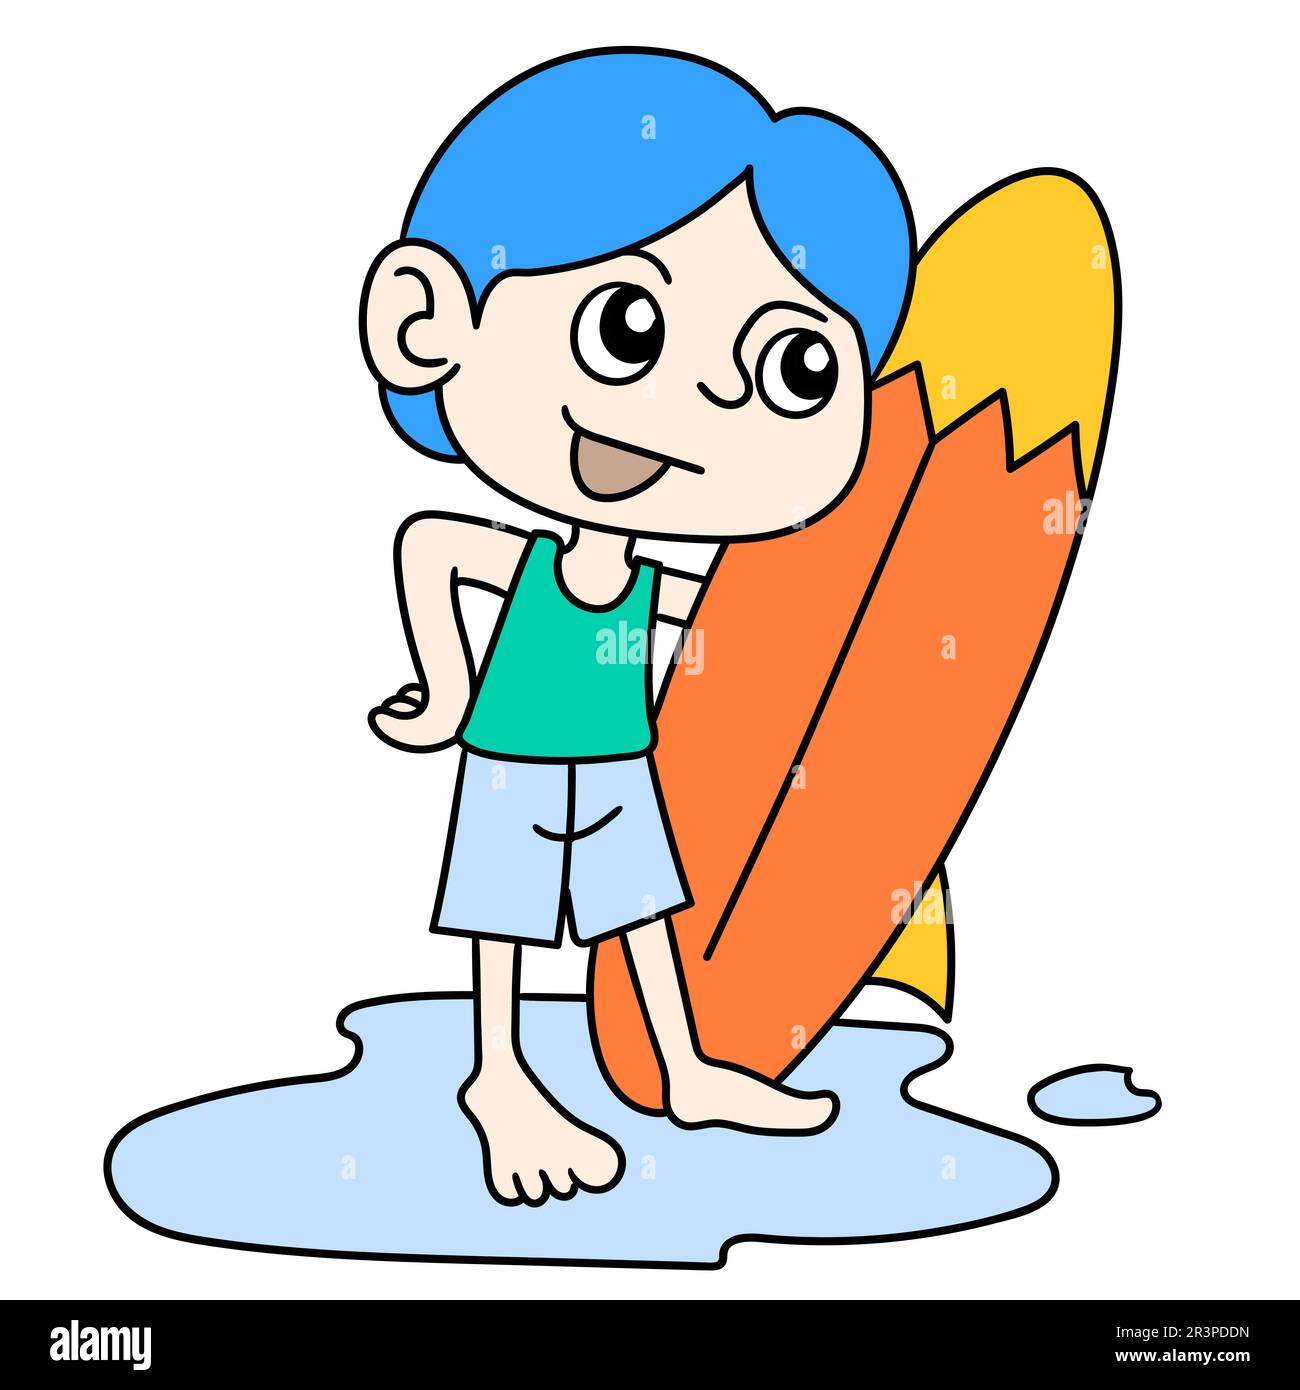 icono de dibujos animados de tabla de surf 10507451 Vector en Vecteezy